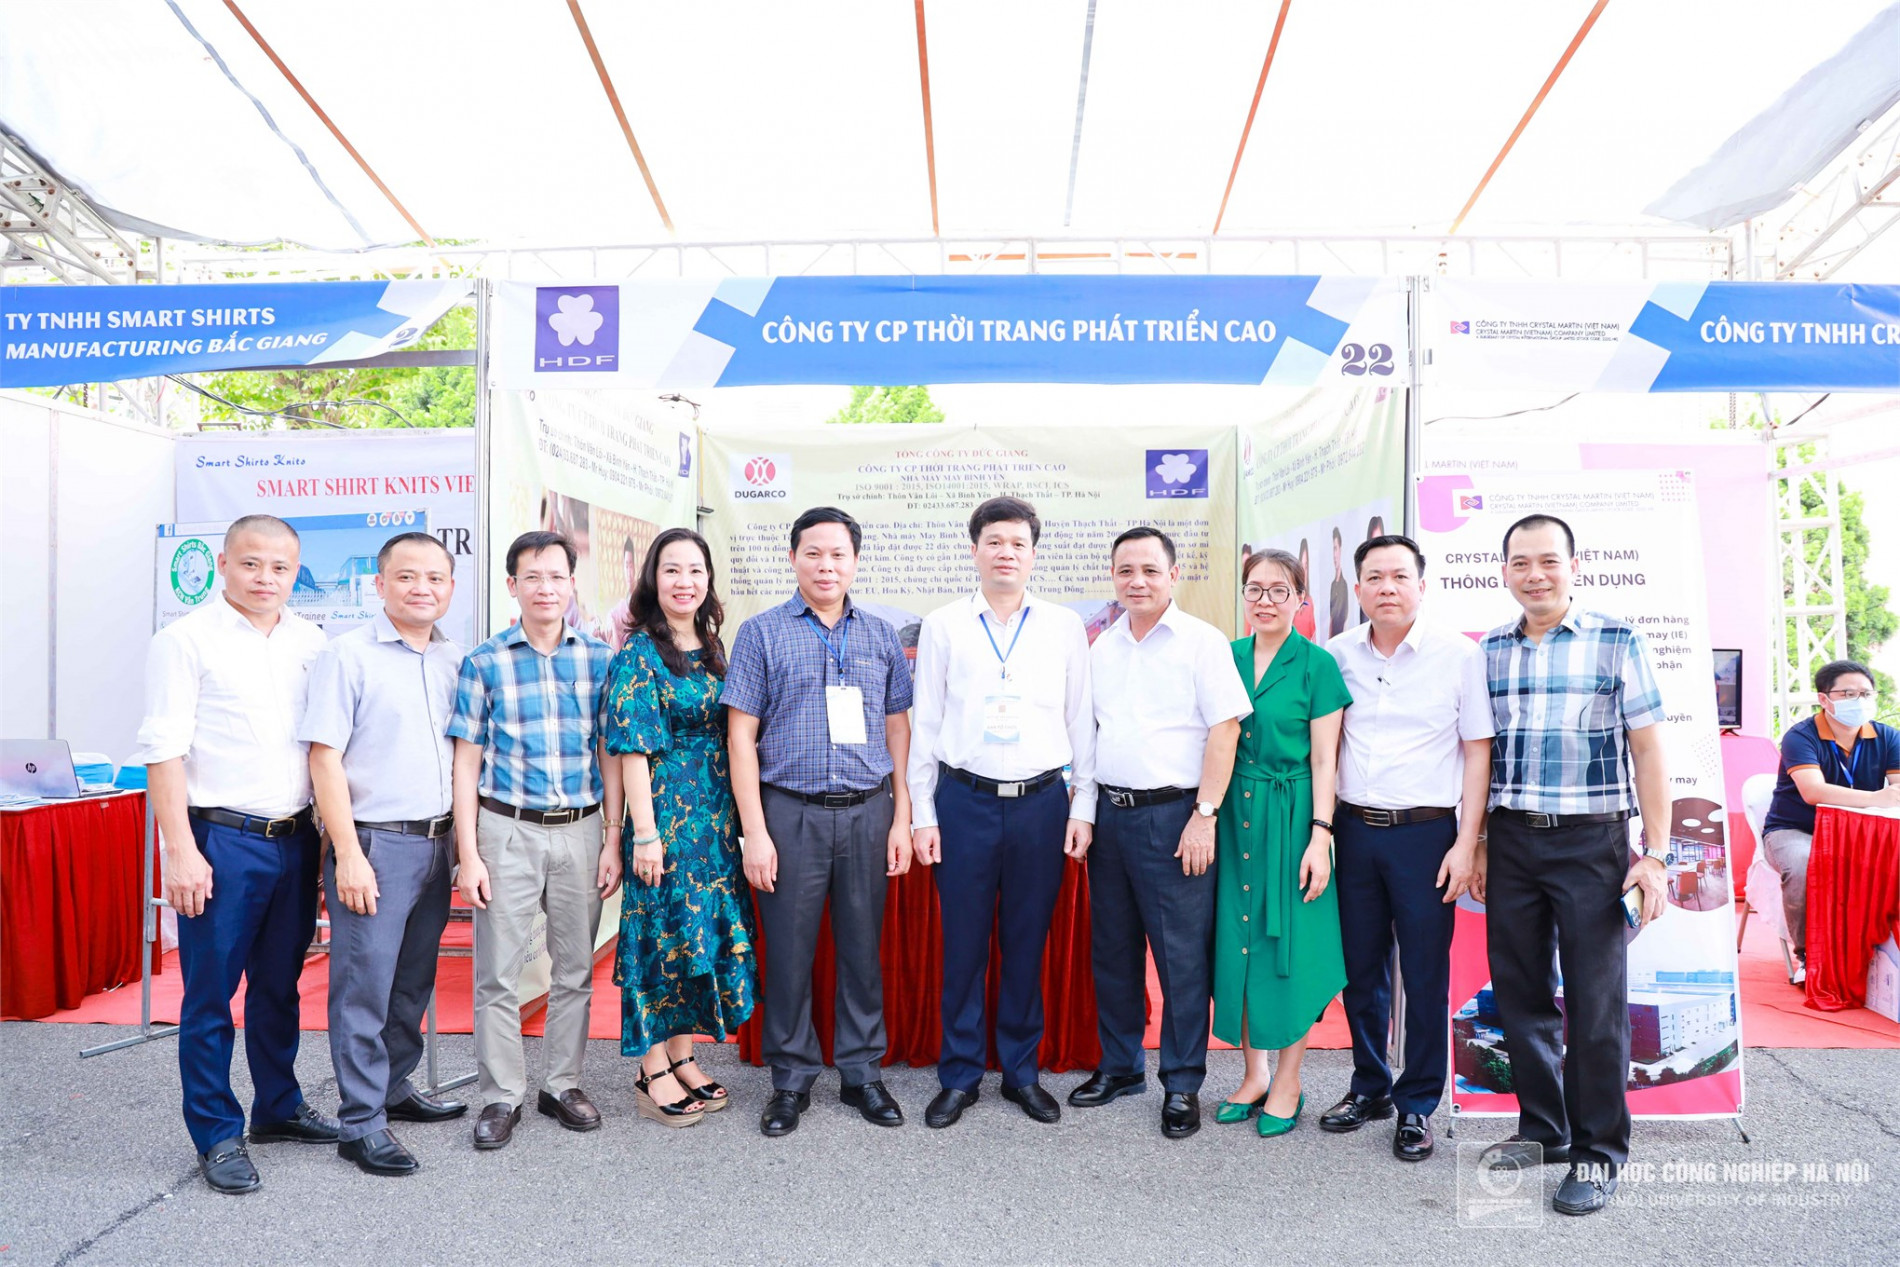 8.500 cơ hội việc làm cho sinh viên Đại học Công nghiệp Hà Nội tại Ngày hội việc làm 2022